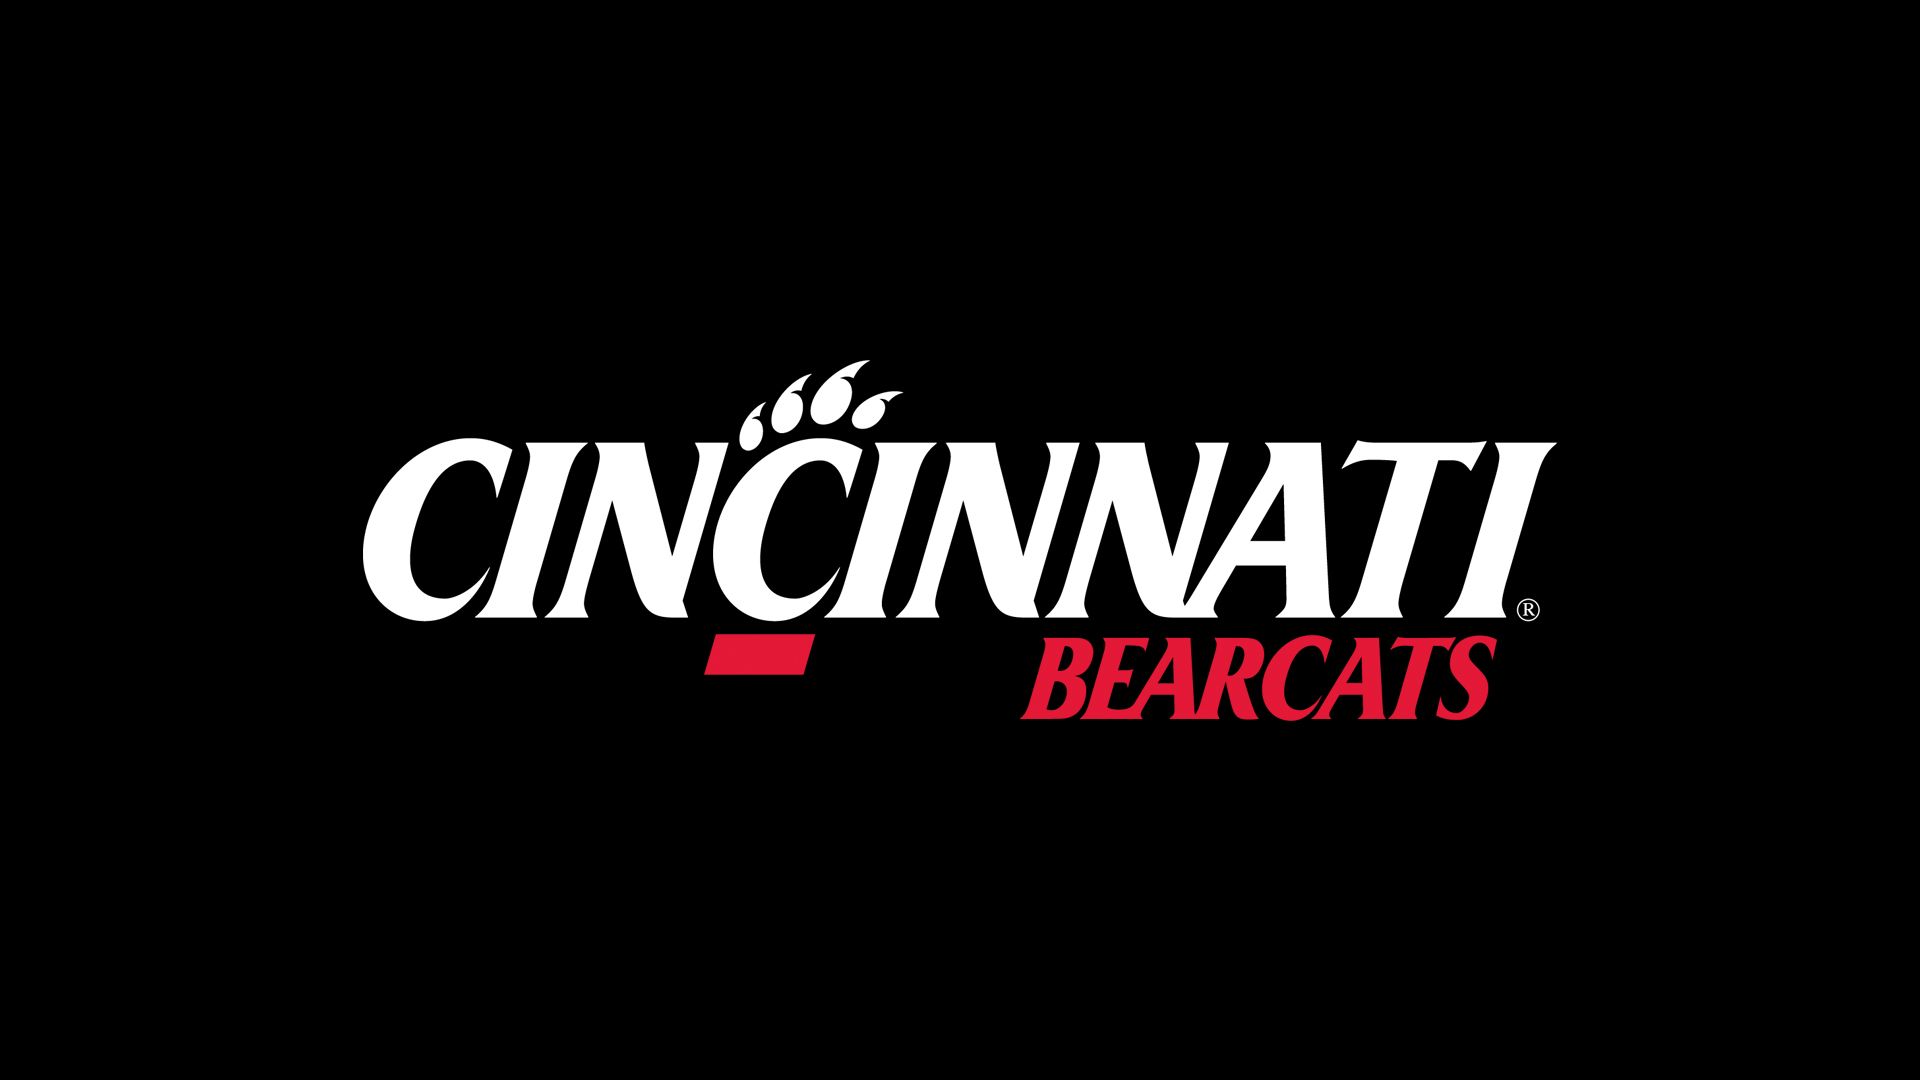 Cincinnati Bearcats wallpaper by Sperstud18  Download on ZEDGE  6a60